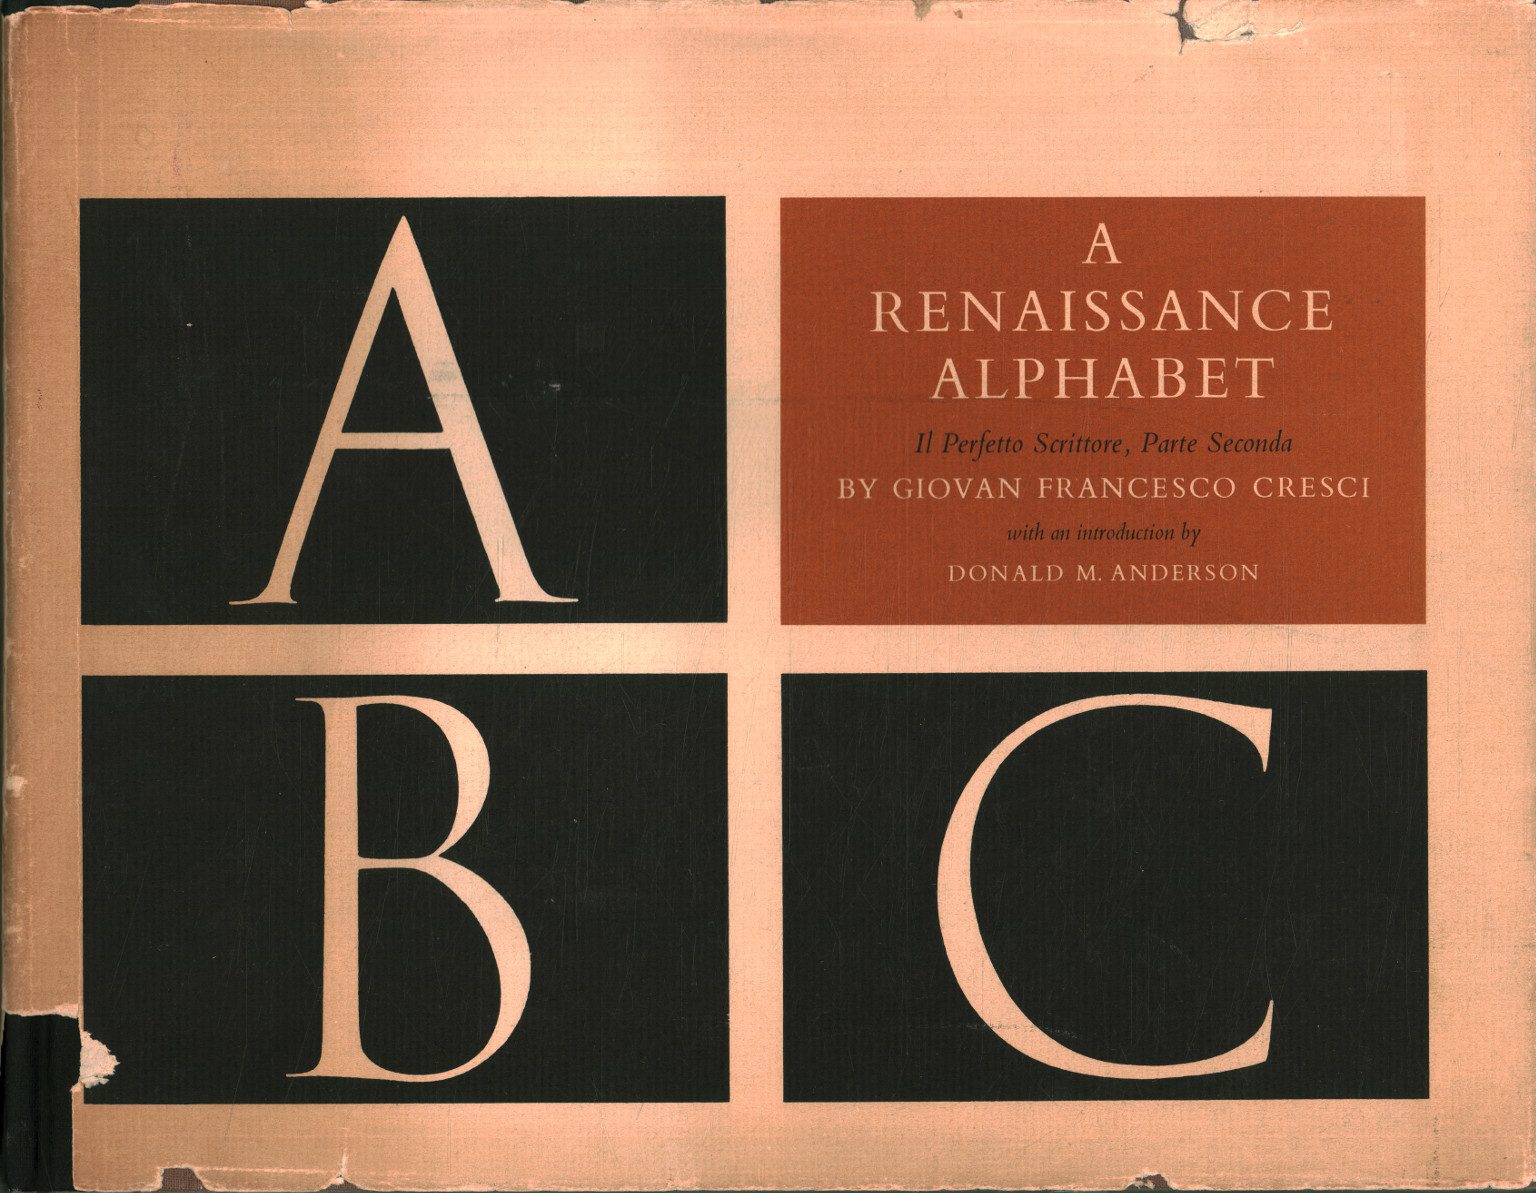 Ein Renaissance-Alphabet